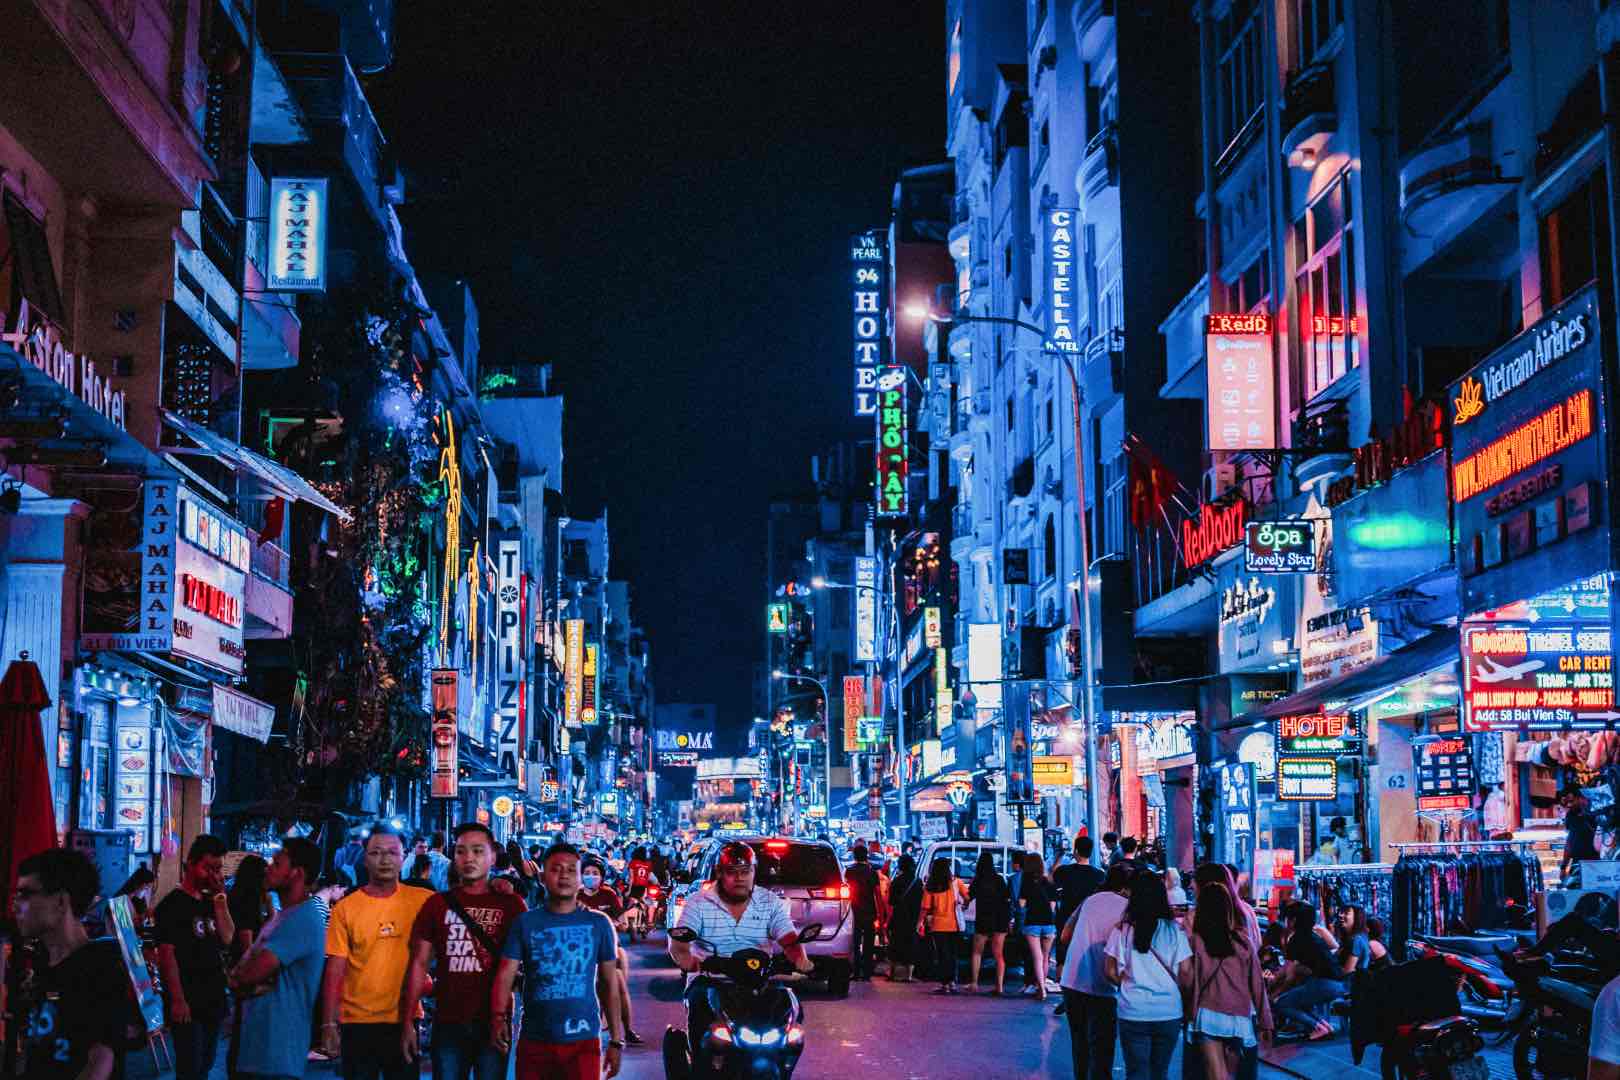 Ho Chi Minh City, Vietnam at night.